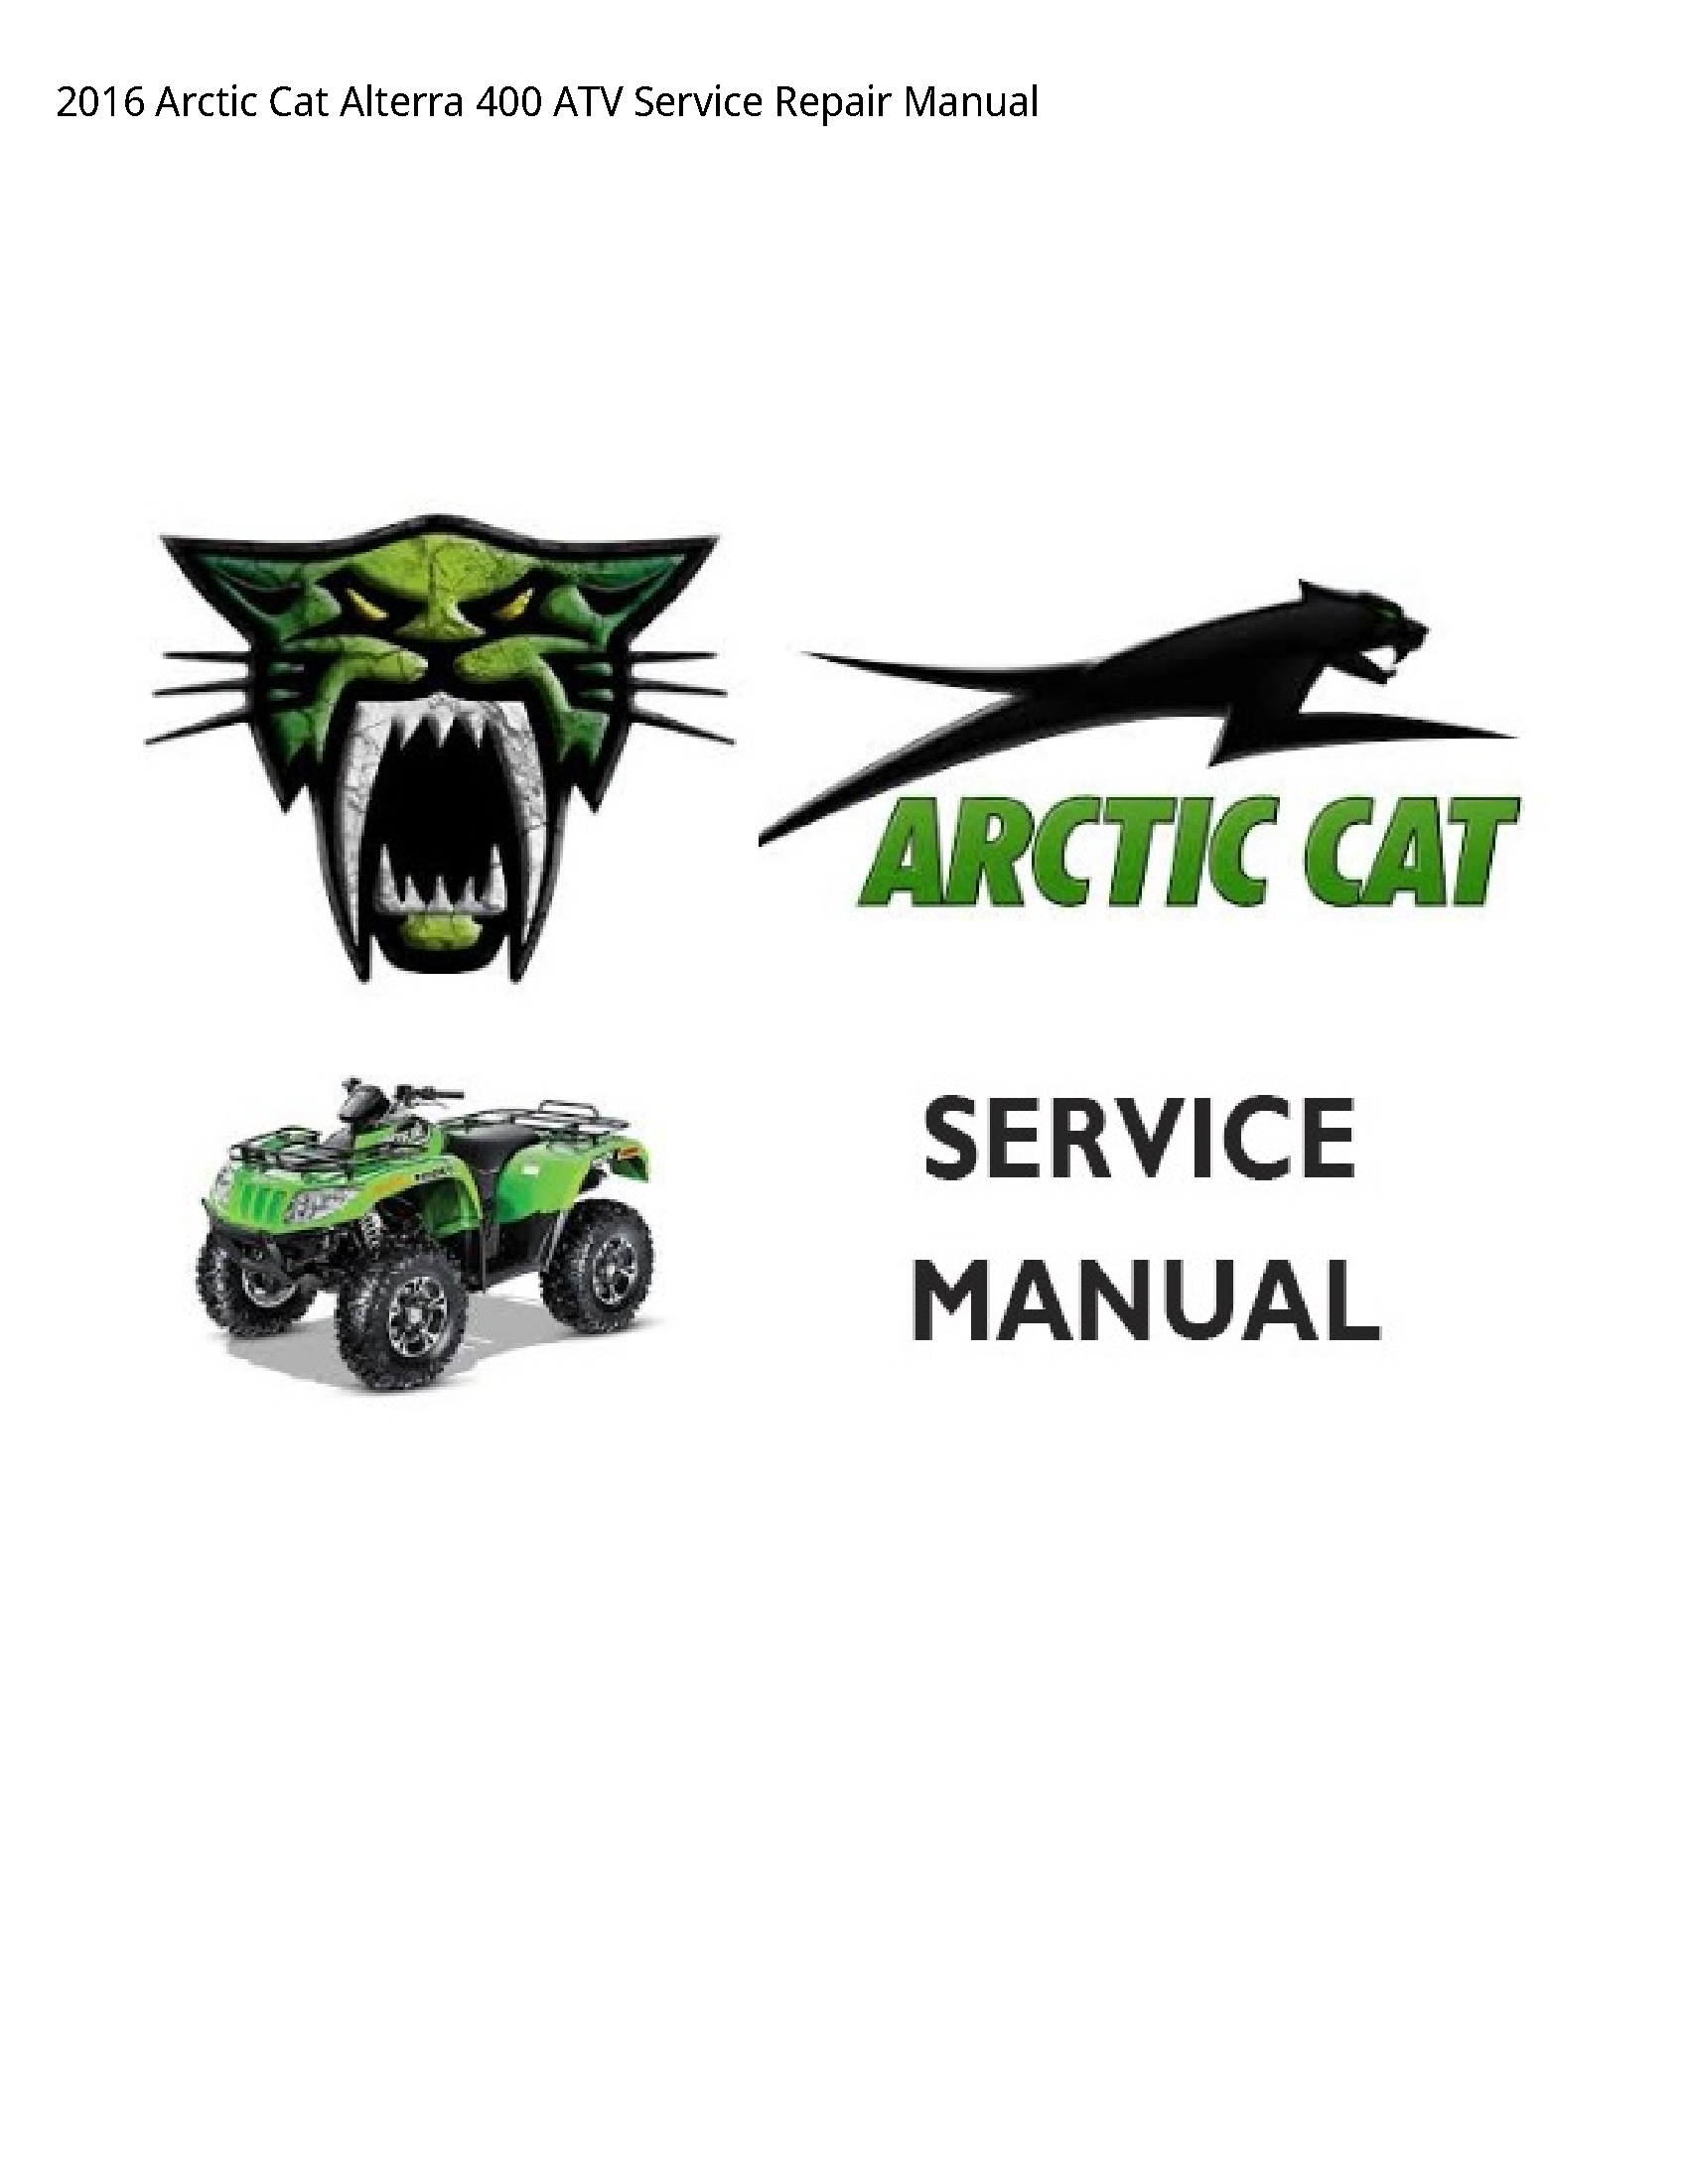 Arctic Cat 400 Alterra ATV manual